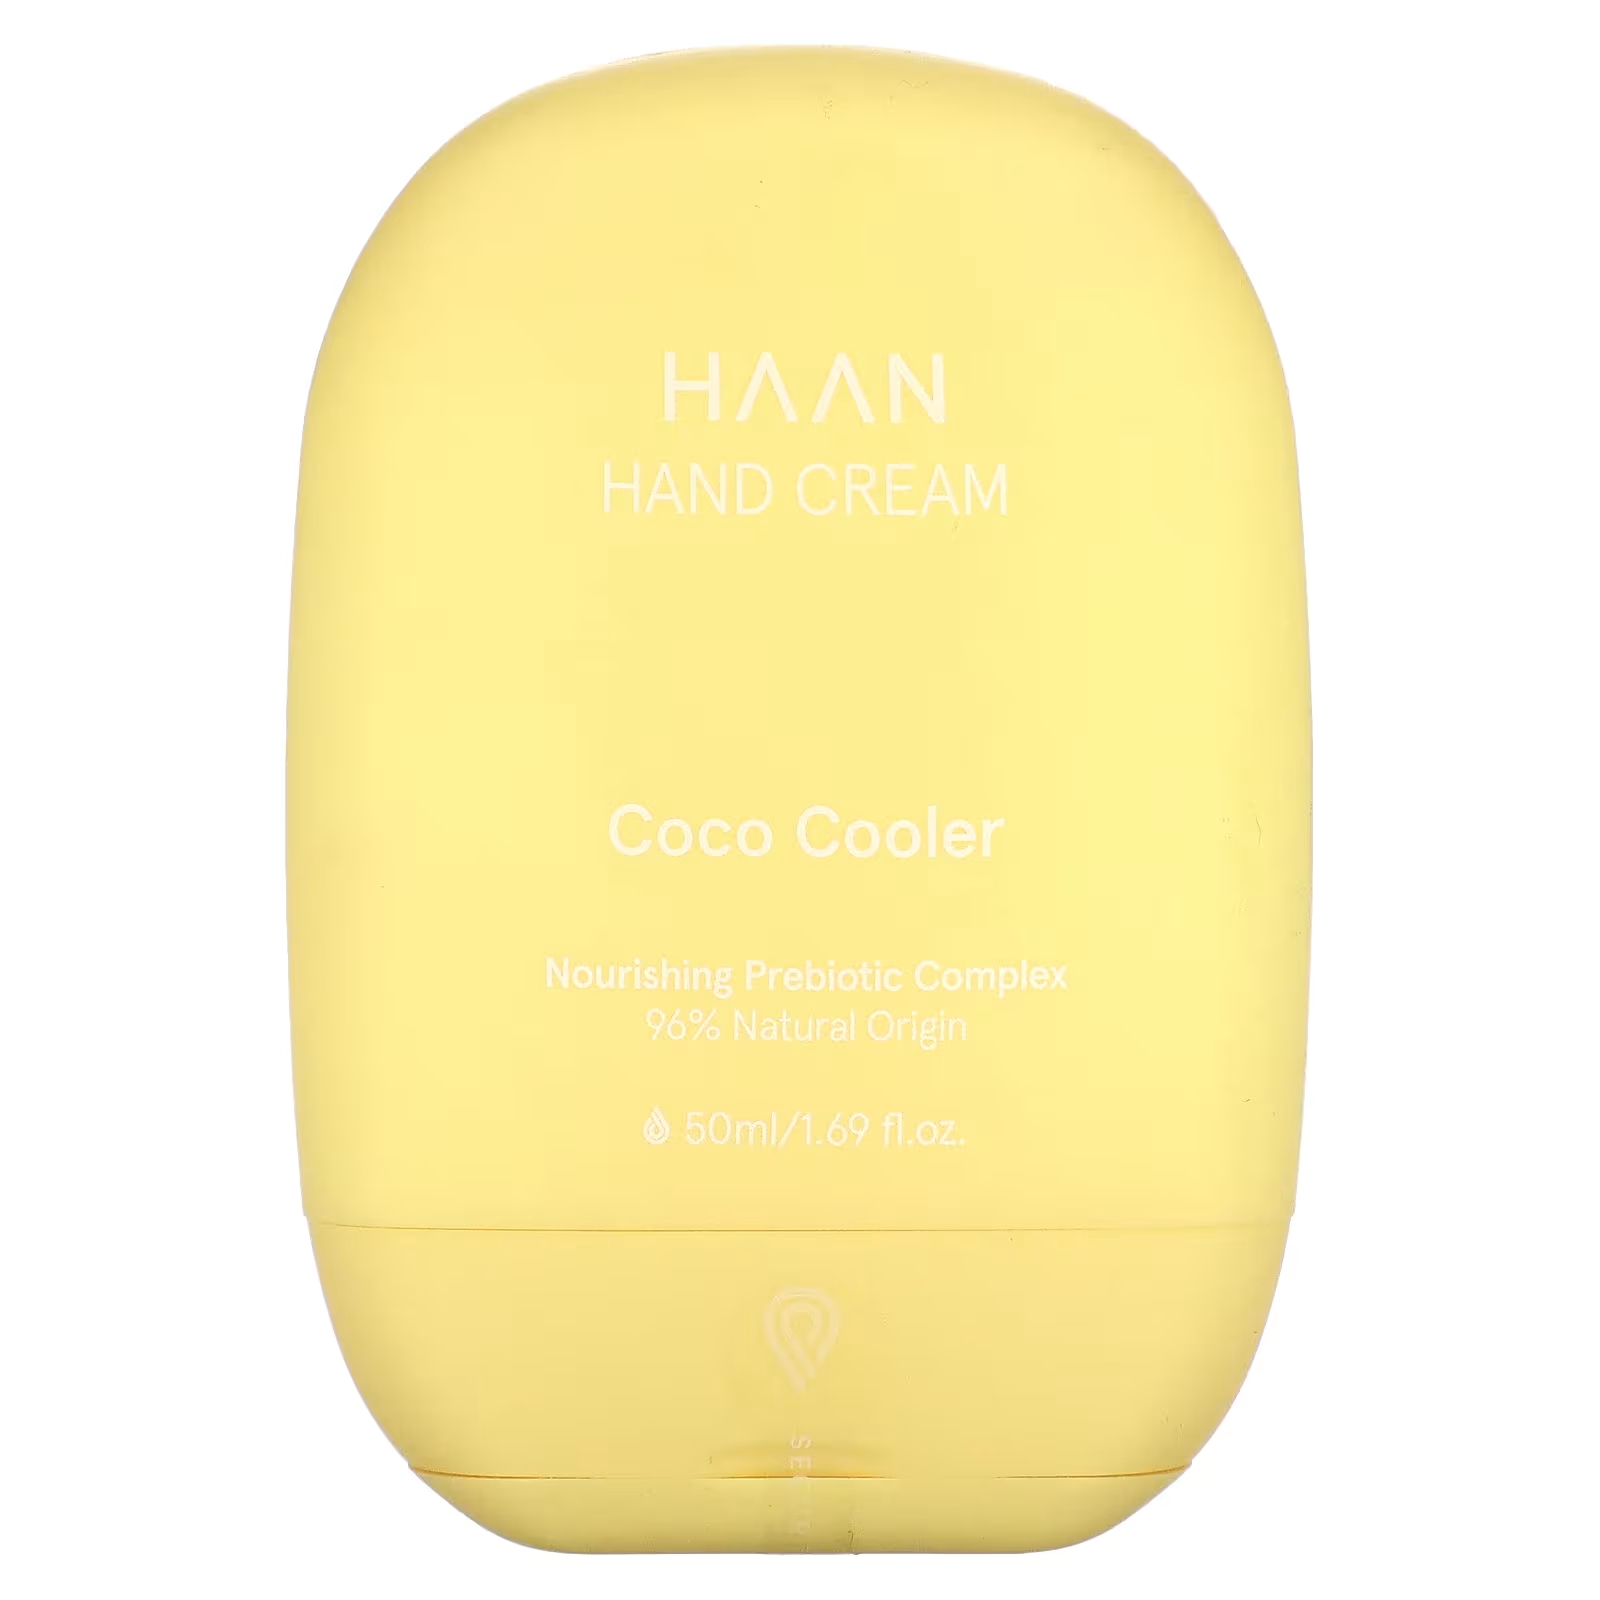 Haan Крем для рук Coco Cooler, 1,69 жидких унций (50 мл) крем для рук coco cooler 50 мл haan